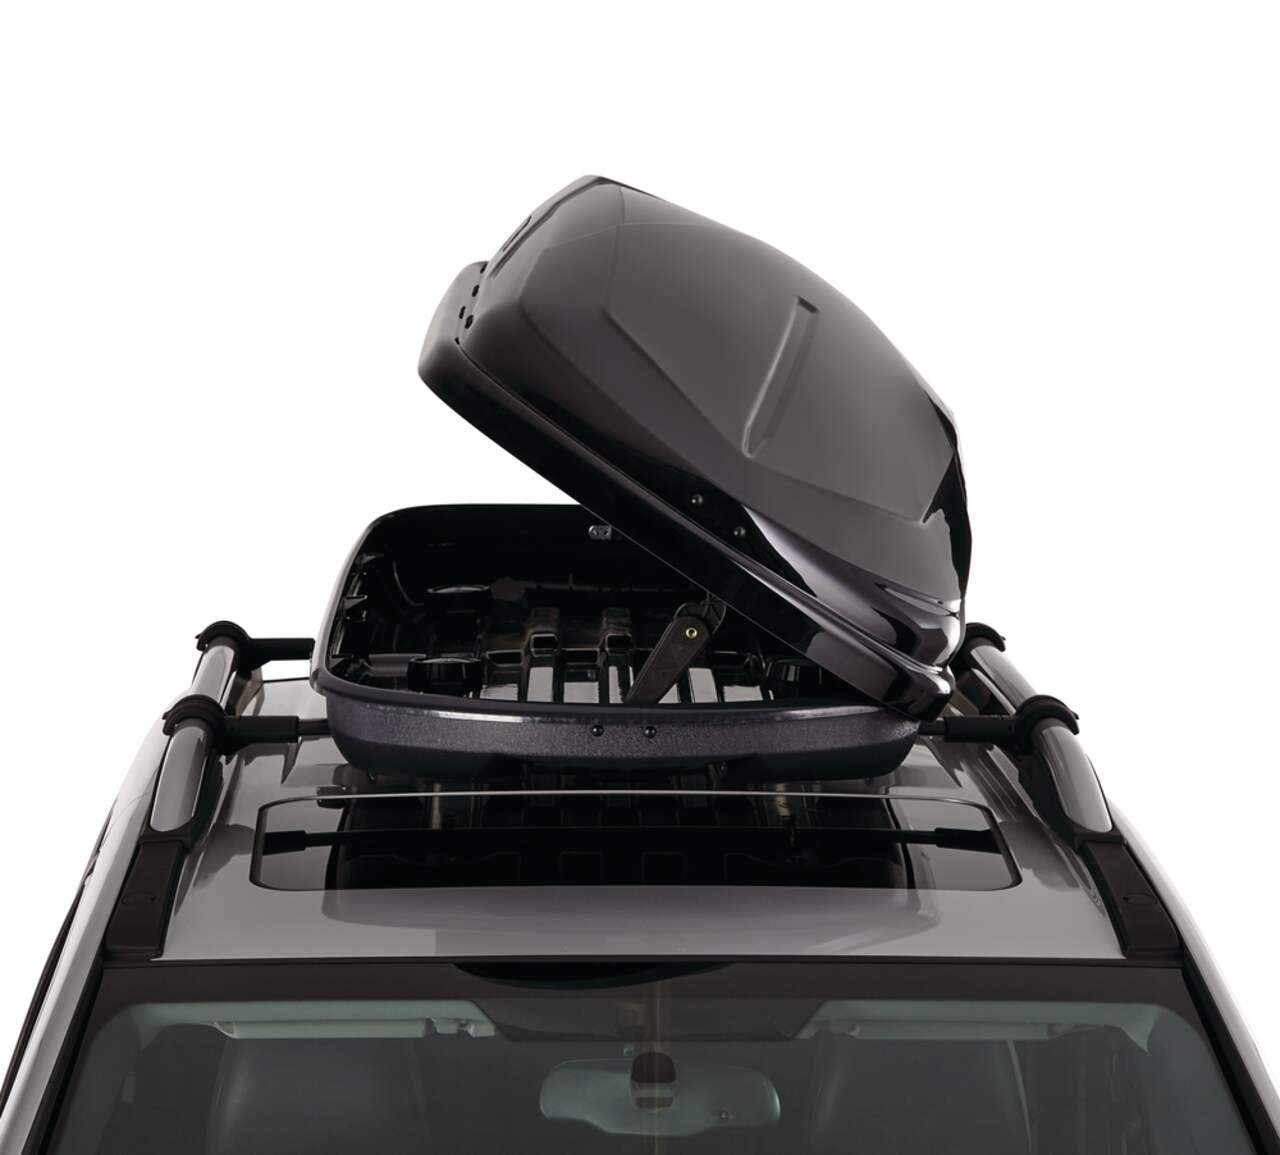 Acheter en ligne THULE Coffre de toit Motion XT L (450 L) à bons prix et en  toute sécurité 